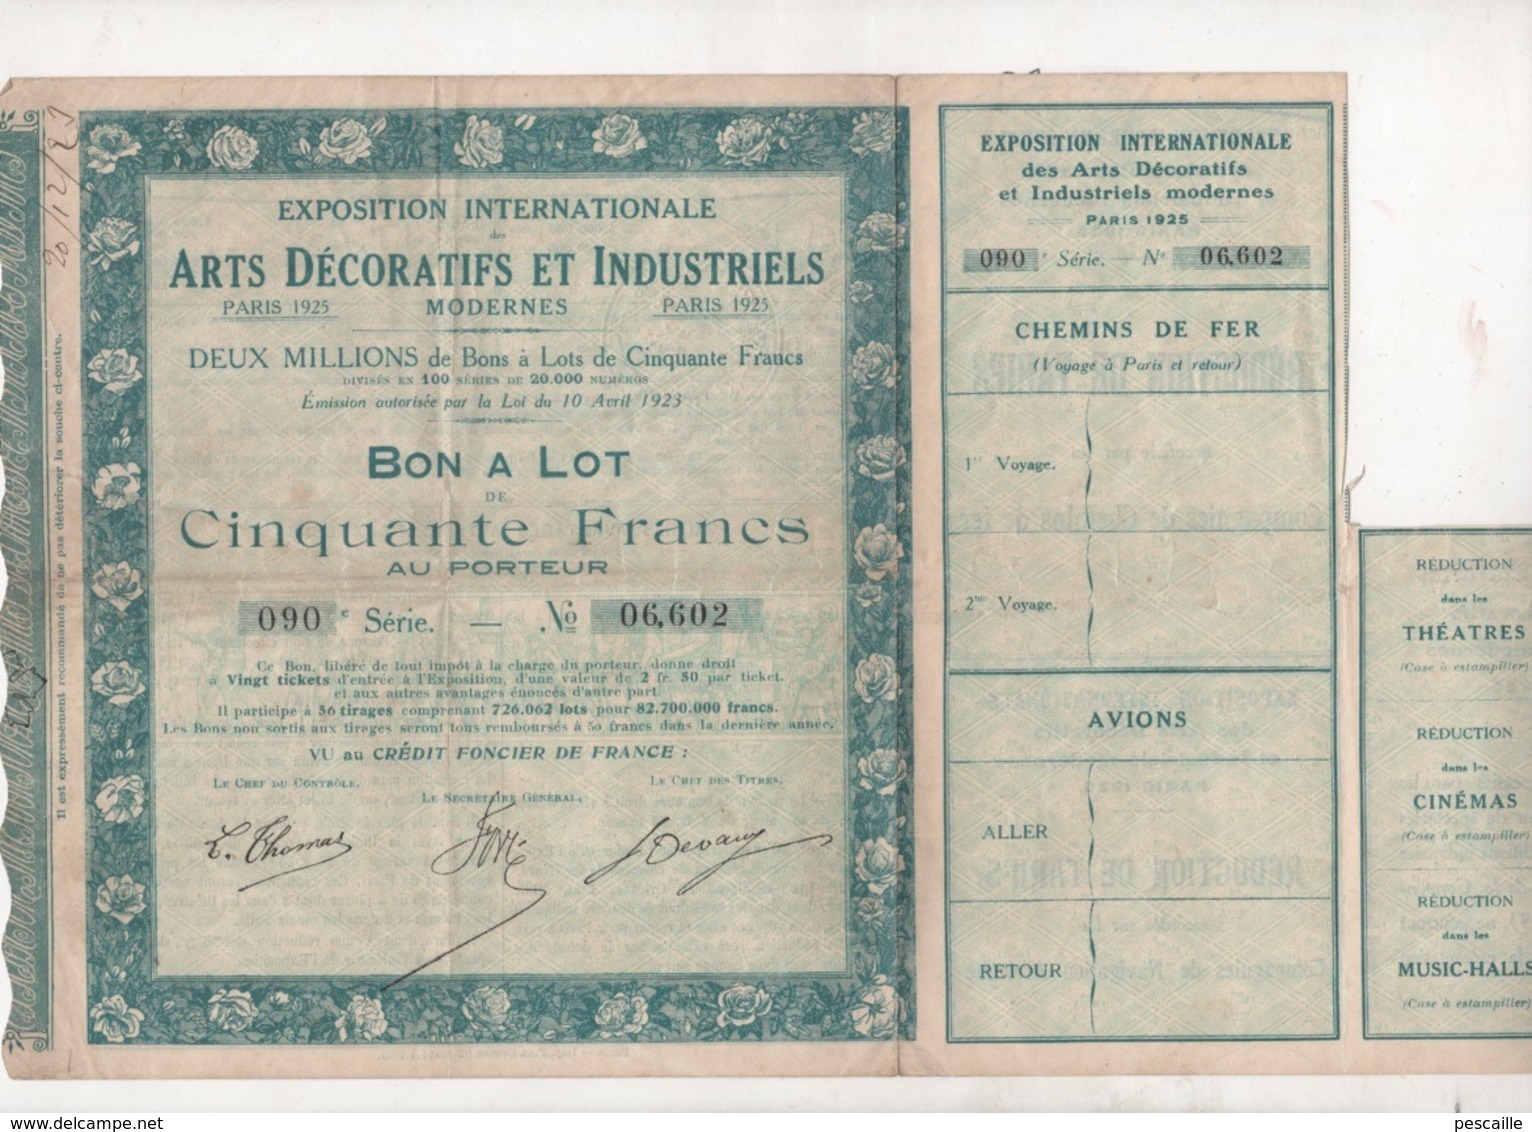 BON A LOT DE CINQUANTE FRANCS - EXPOSITION INTERNATIONALE DES ARTS DECORATIFS ET INDUSTRIELS MODERNES PARIS 1925 - Tourisme